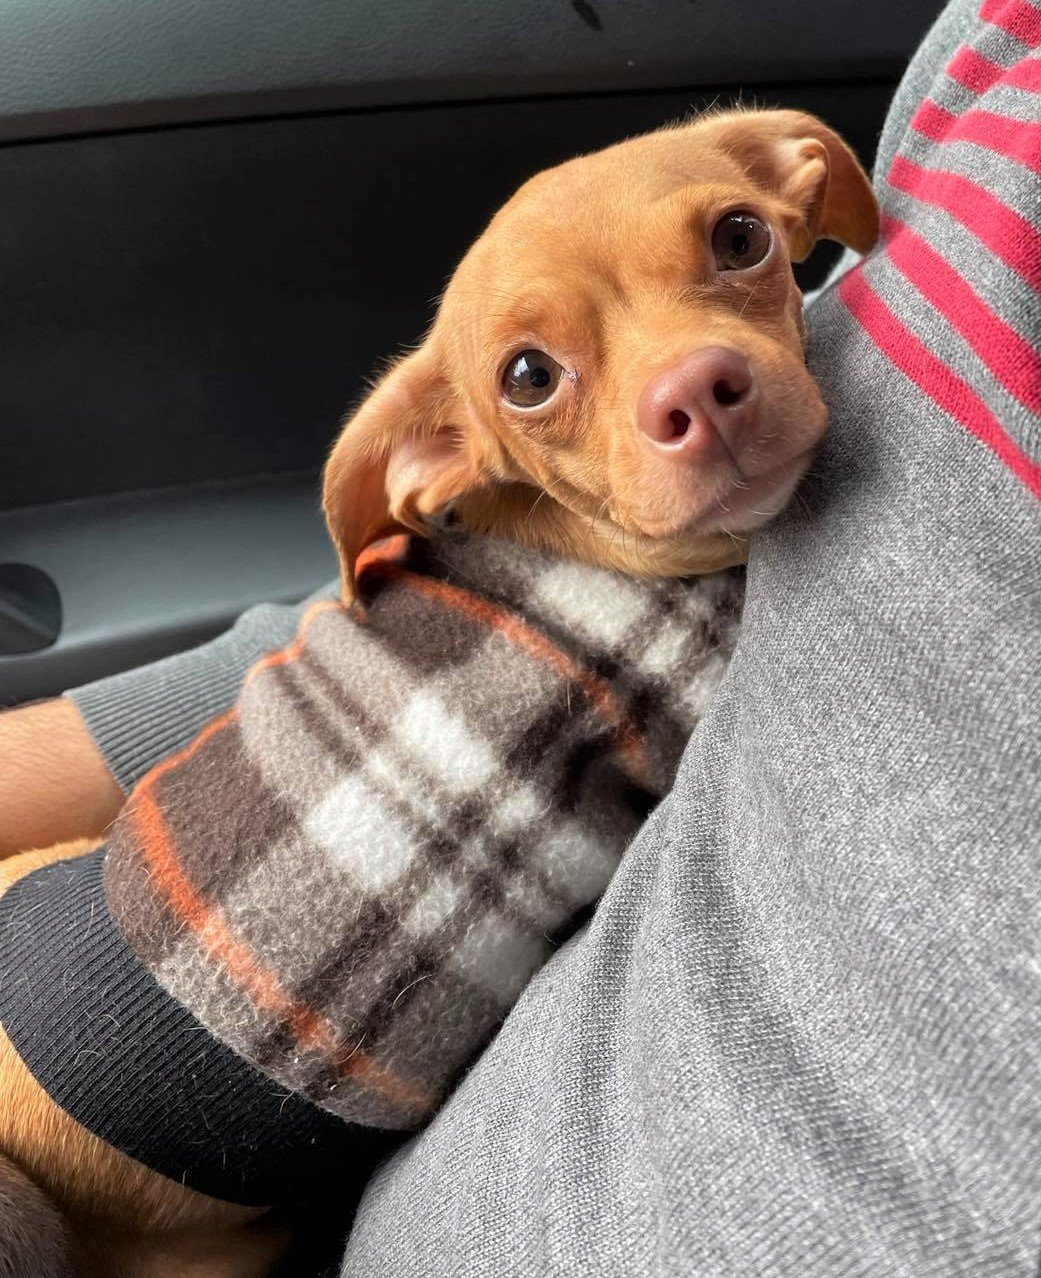 adoptable Dog in Arlington, WA named Pumpkin, a Chihuahua mix